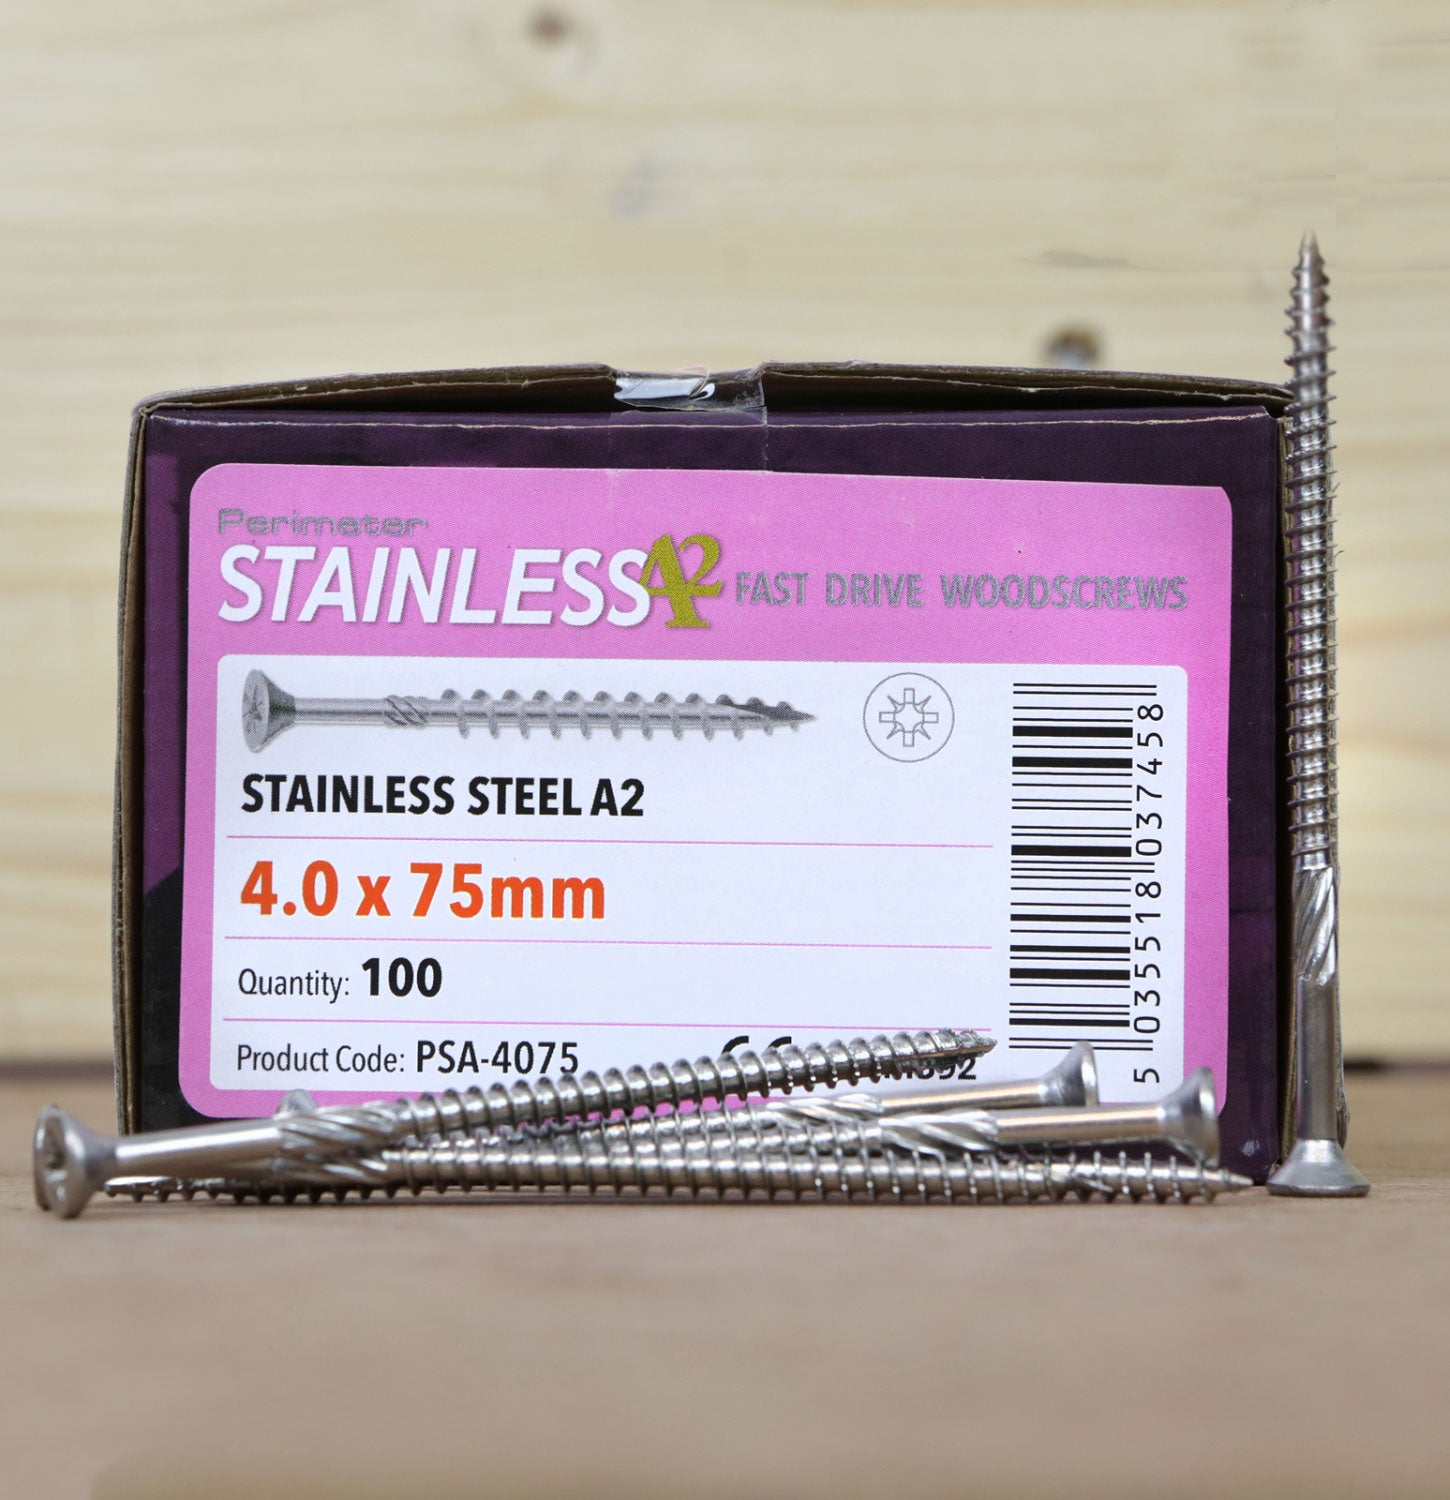 Perimeter Stainless Steel A2 Torx Wood Screws 4.0 x 75mm - Pack of 200